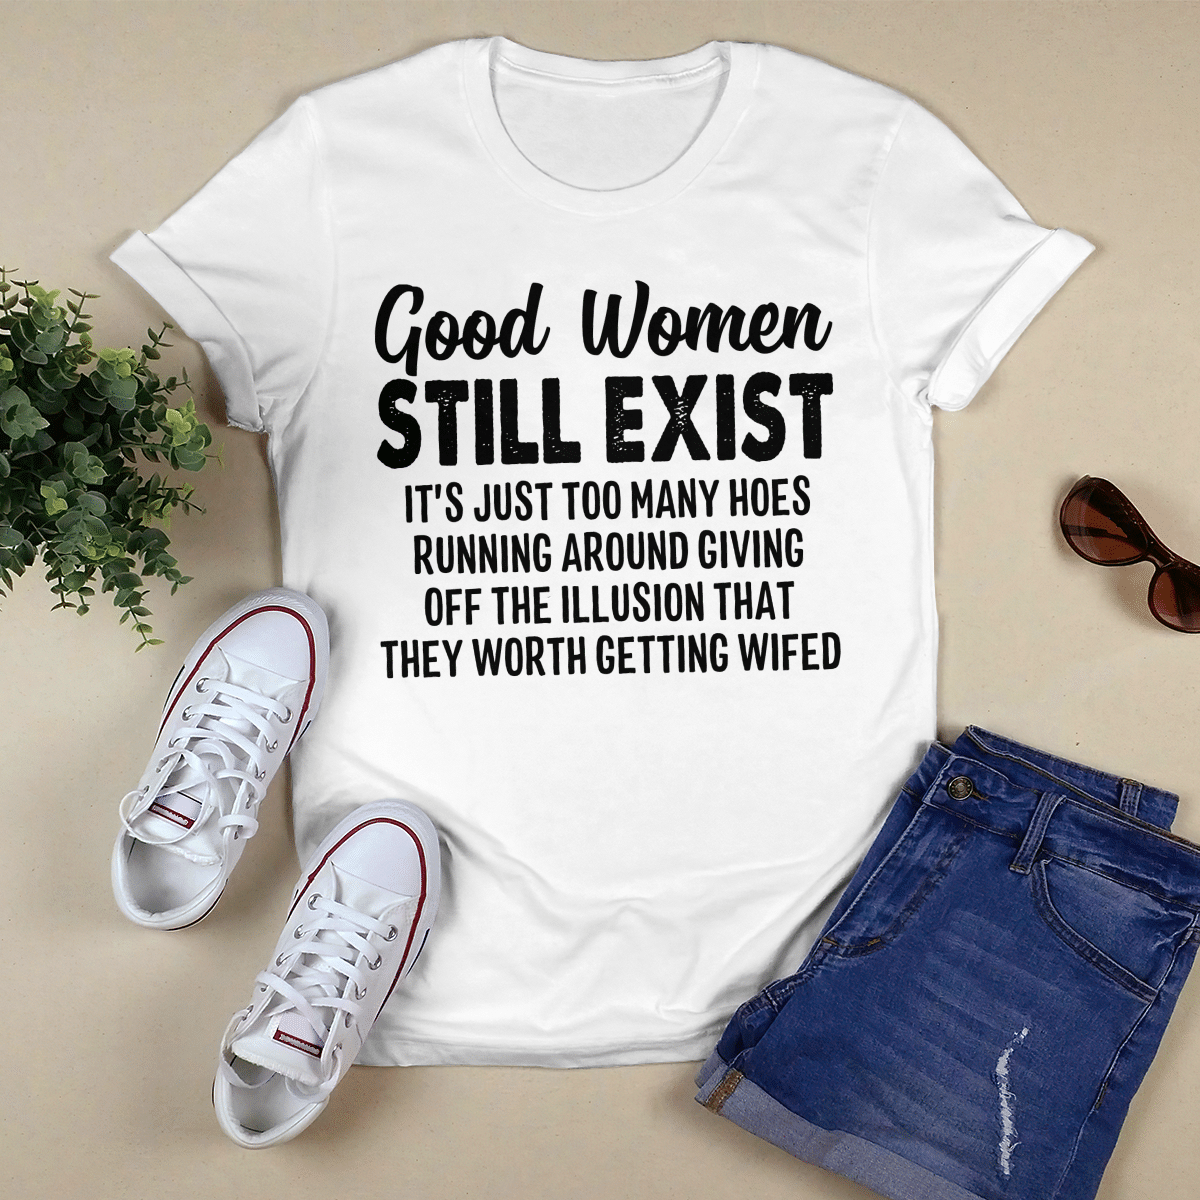 Good Women Still Exist shirt